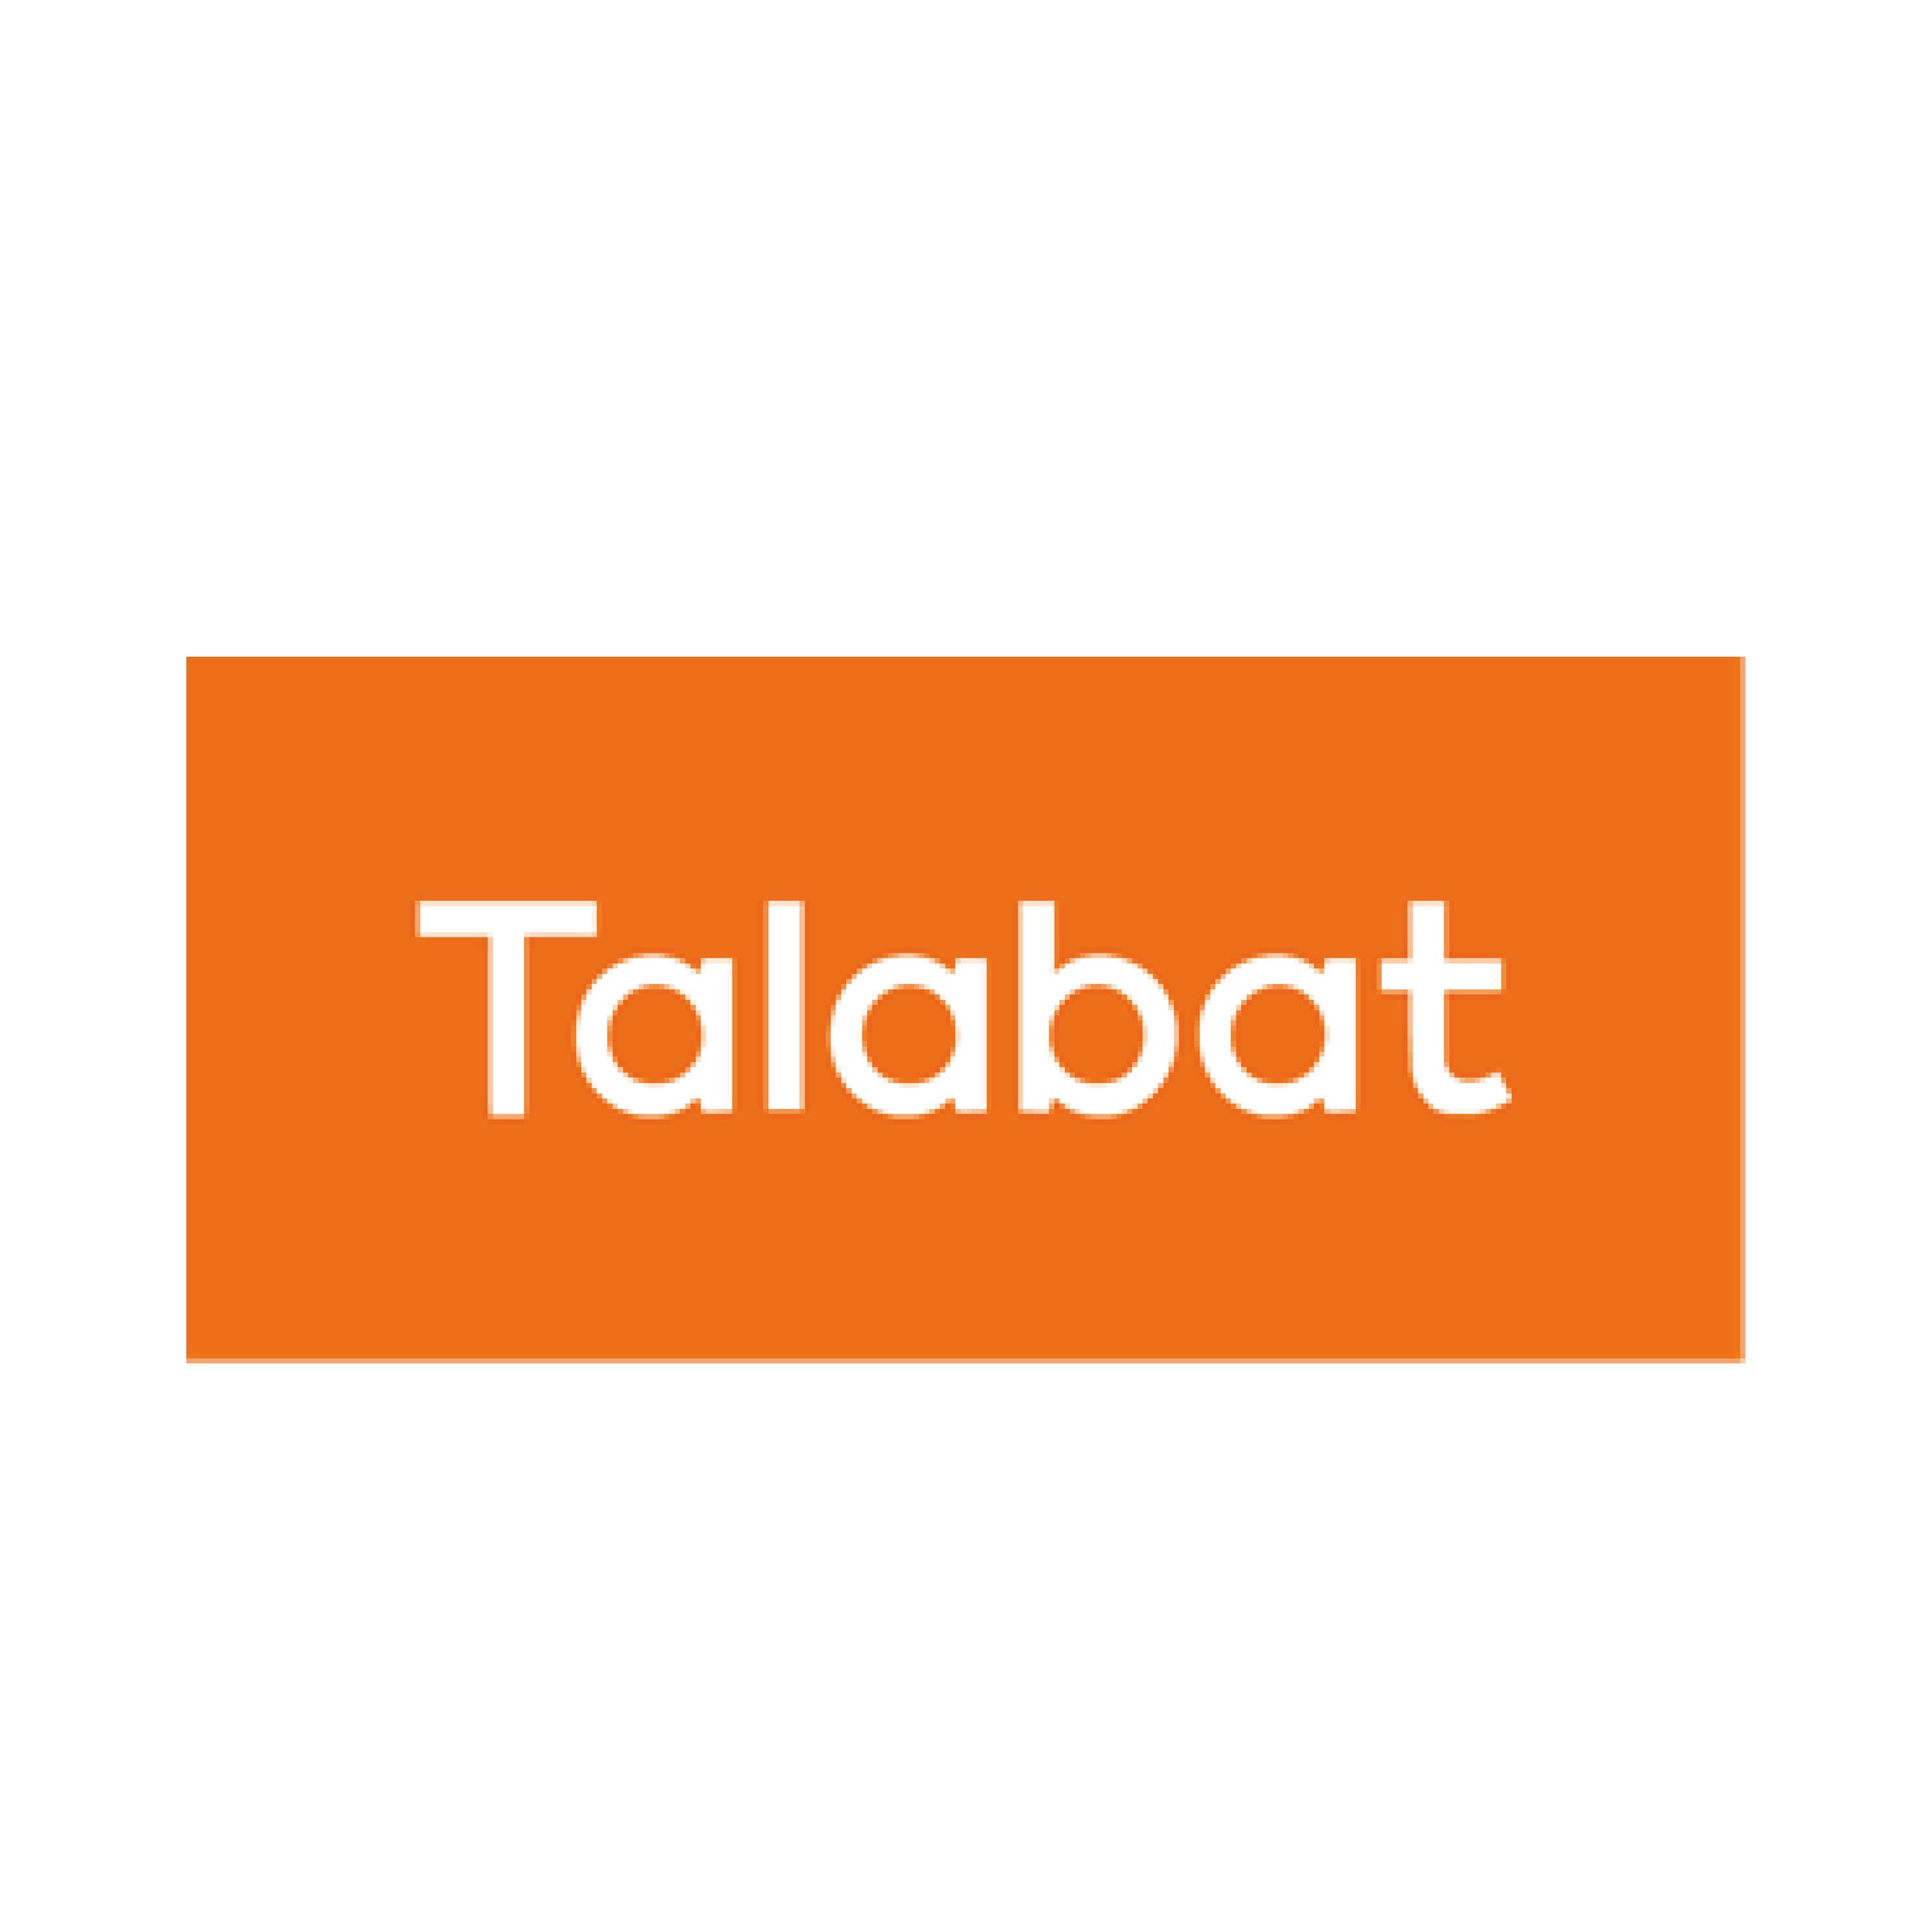 talabat-logo-2B429F1362-seeklogo.com.png